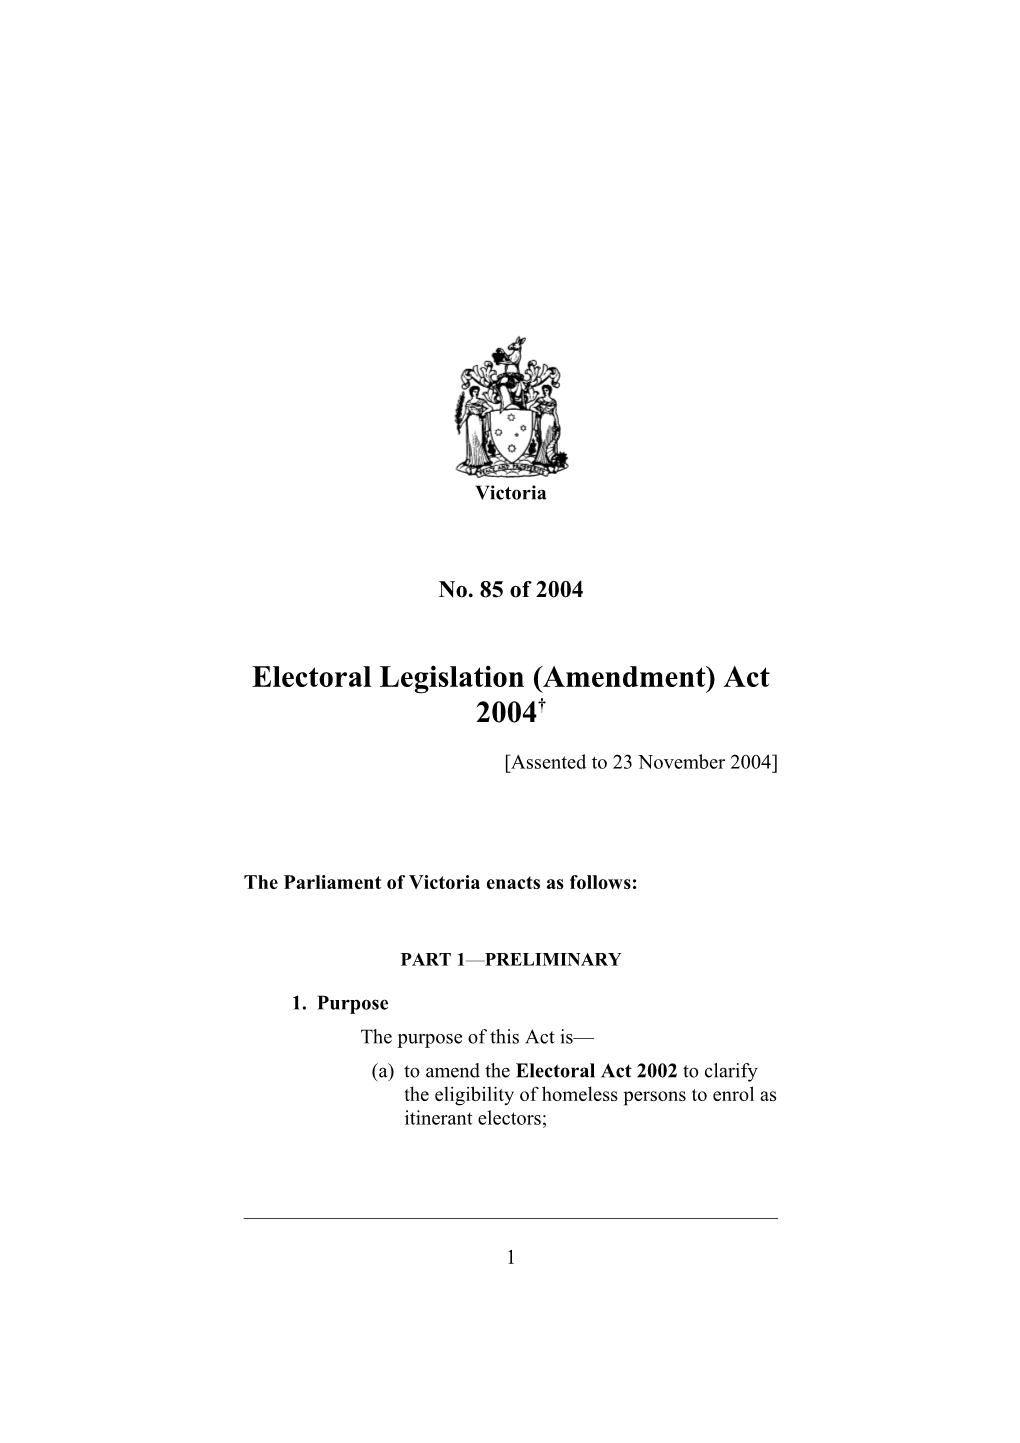 Electoral Legislation (Amendment) Act 2004